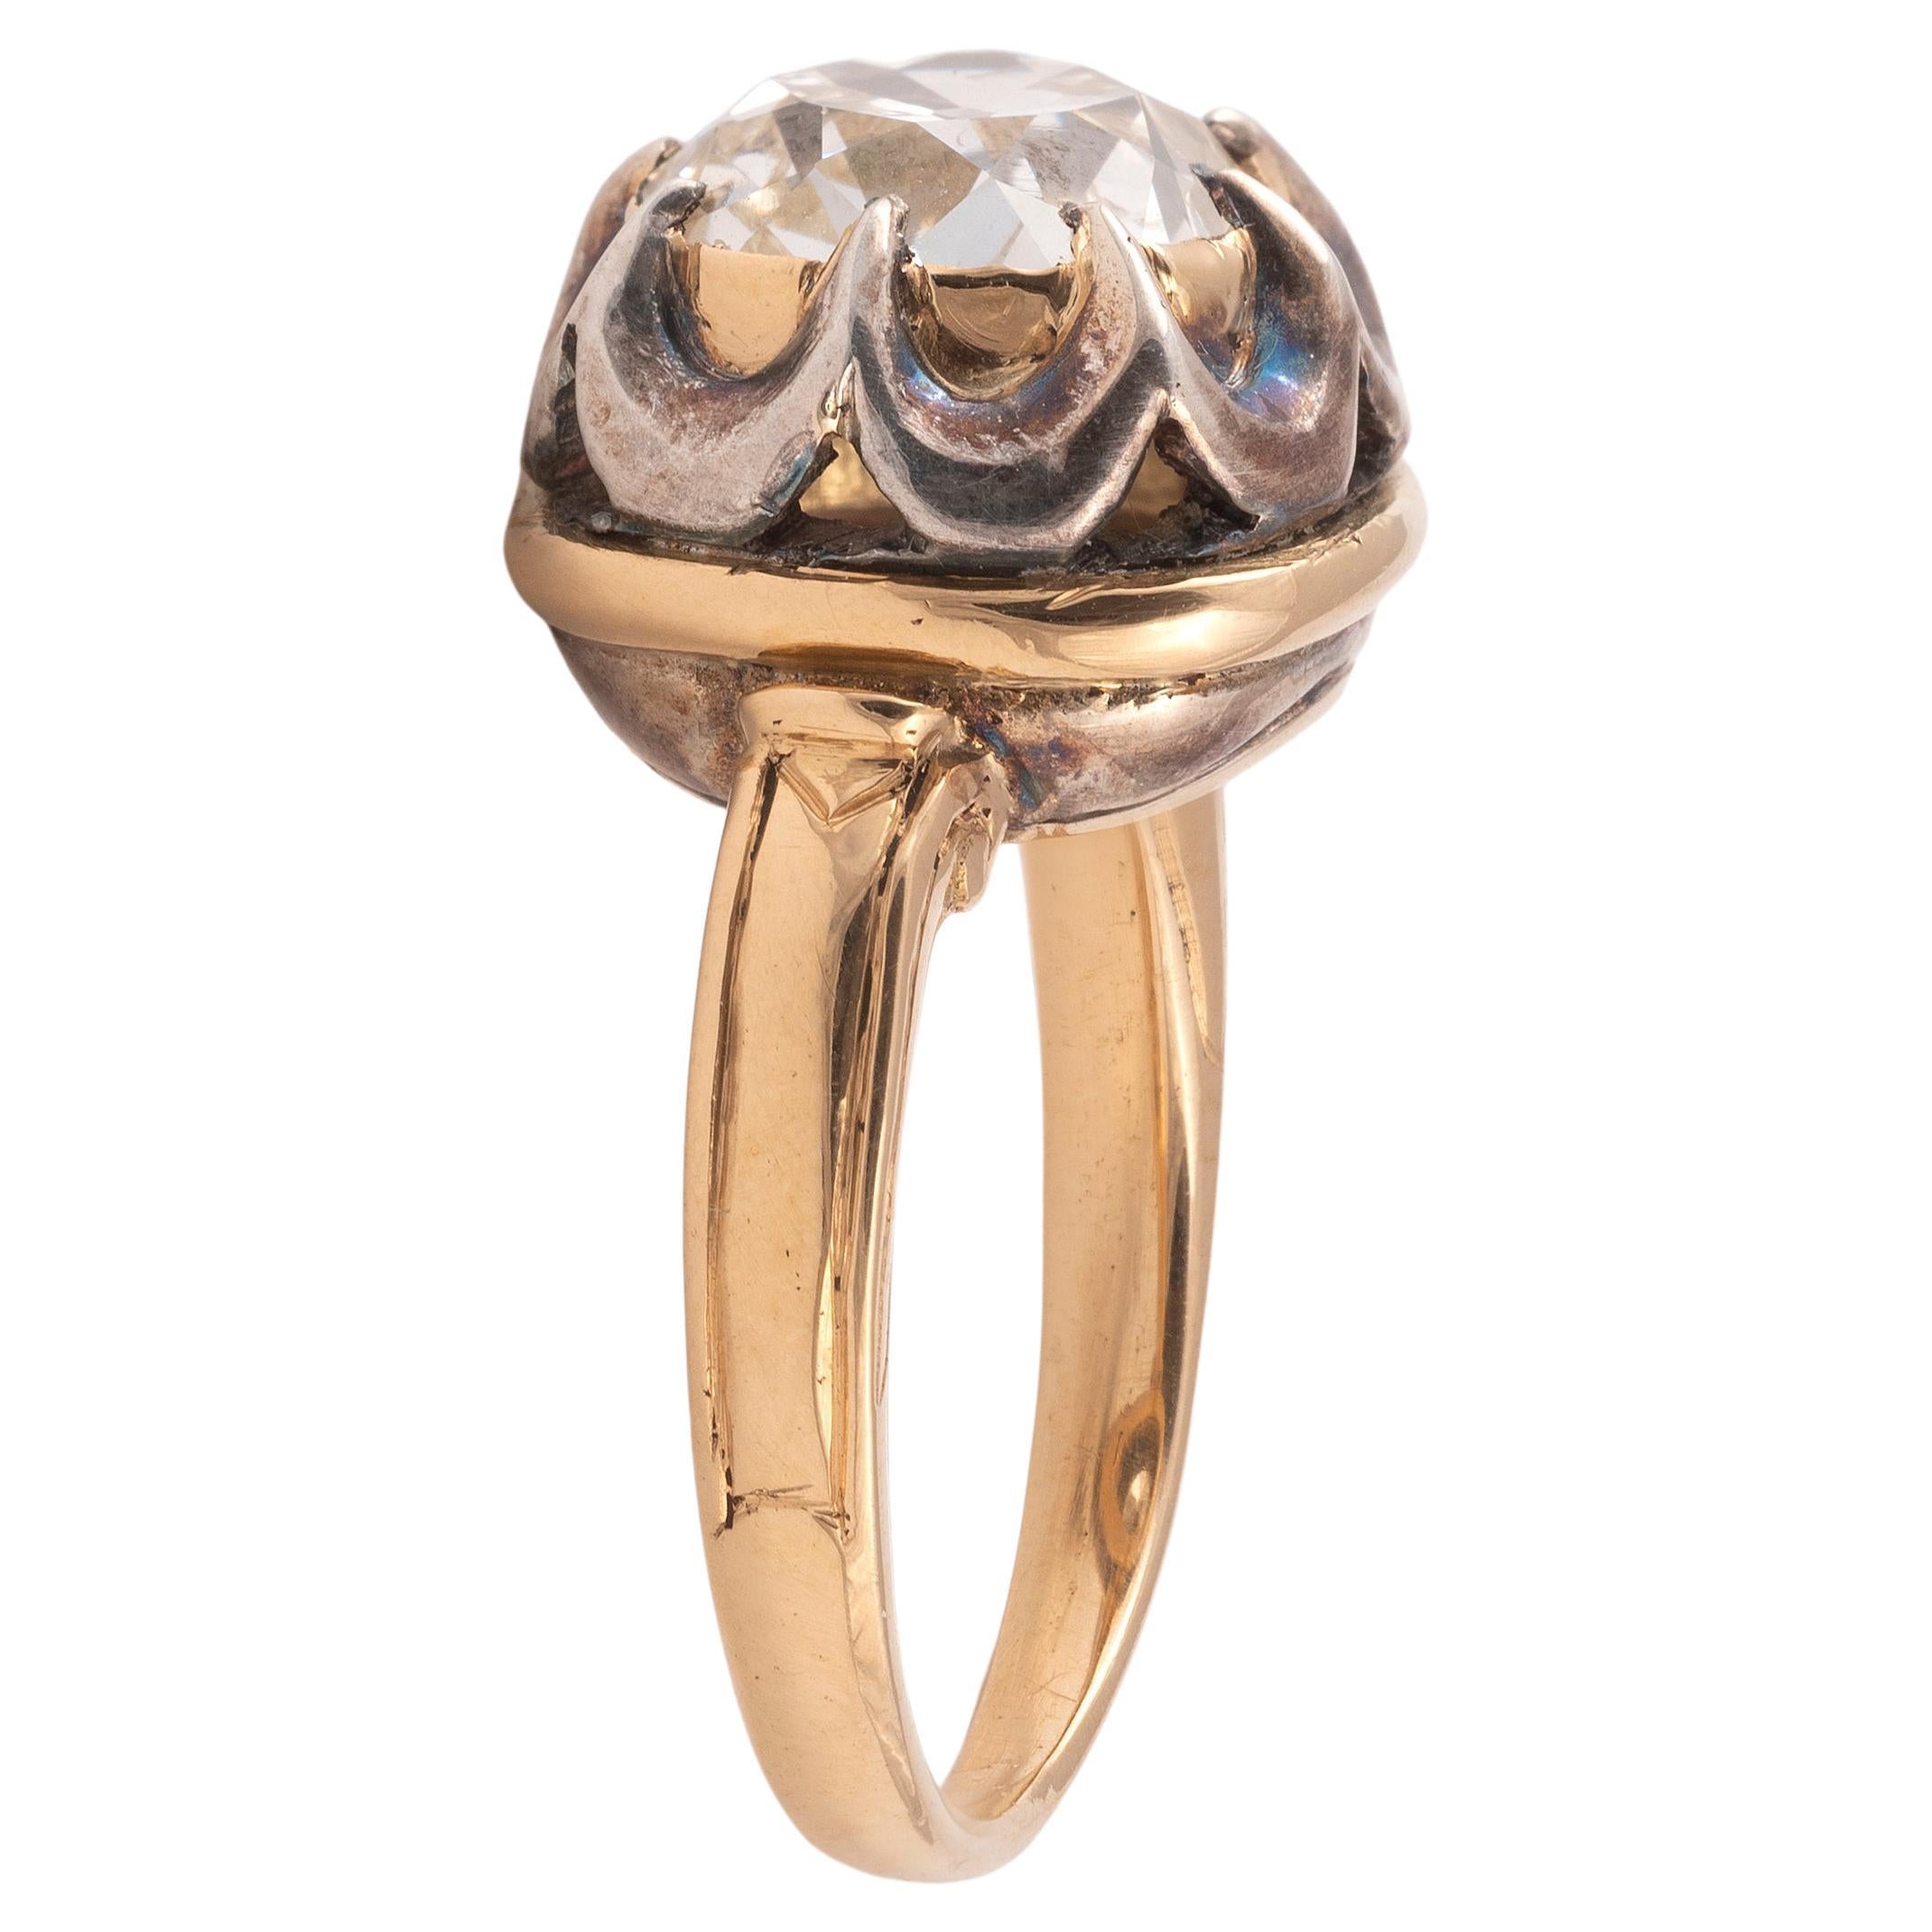 Der kissenförmige Altschliff (ca. 4ct) ist mit diamantbesetzten Klauen und einer Einfassung aus Silber und Gold versehen, die sich verjüngenden Schultern sind mit einem einfachen Dekor versehen.
Größe : 7 1/4
Gewicht: 9,90gr.